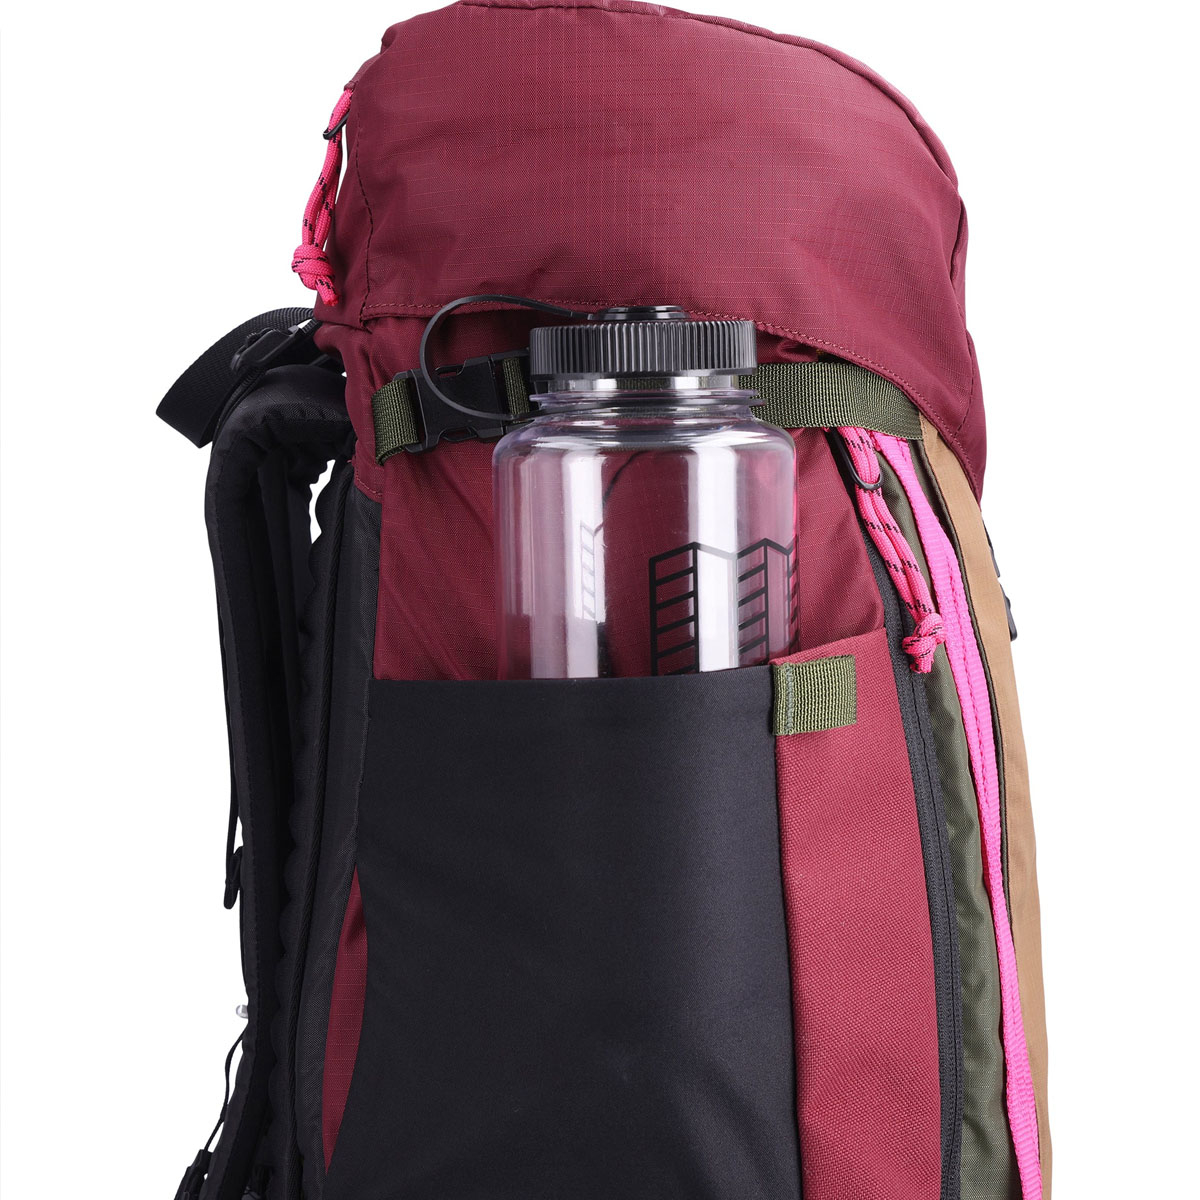 Topo Designs Mountain Pack 28L, geräumige Seitentaschen, in die jeweils eine 1.5-Liter-Wasserflasche passt